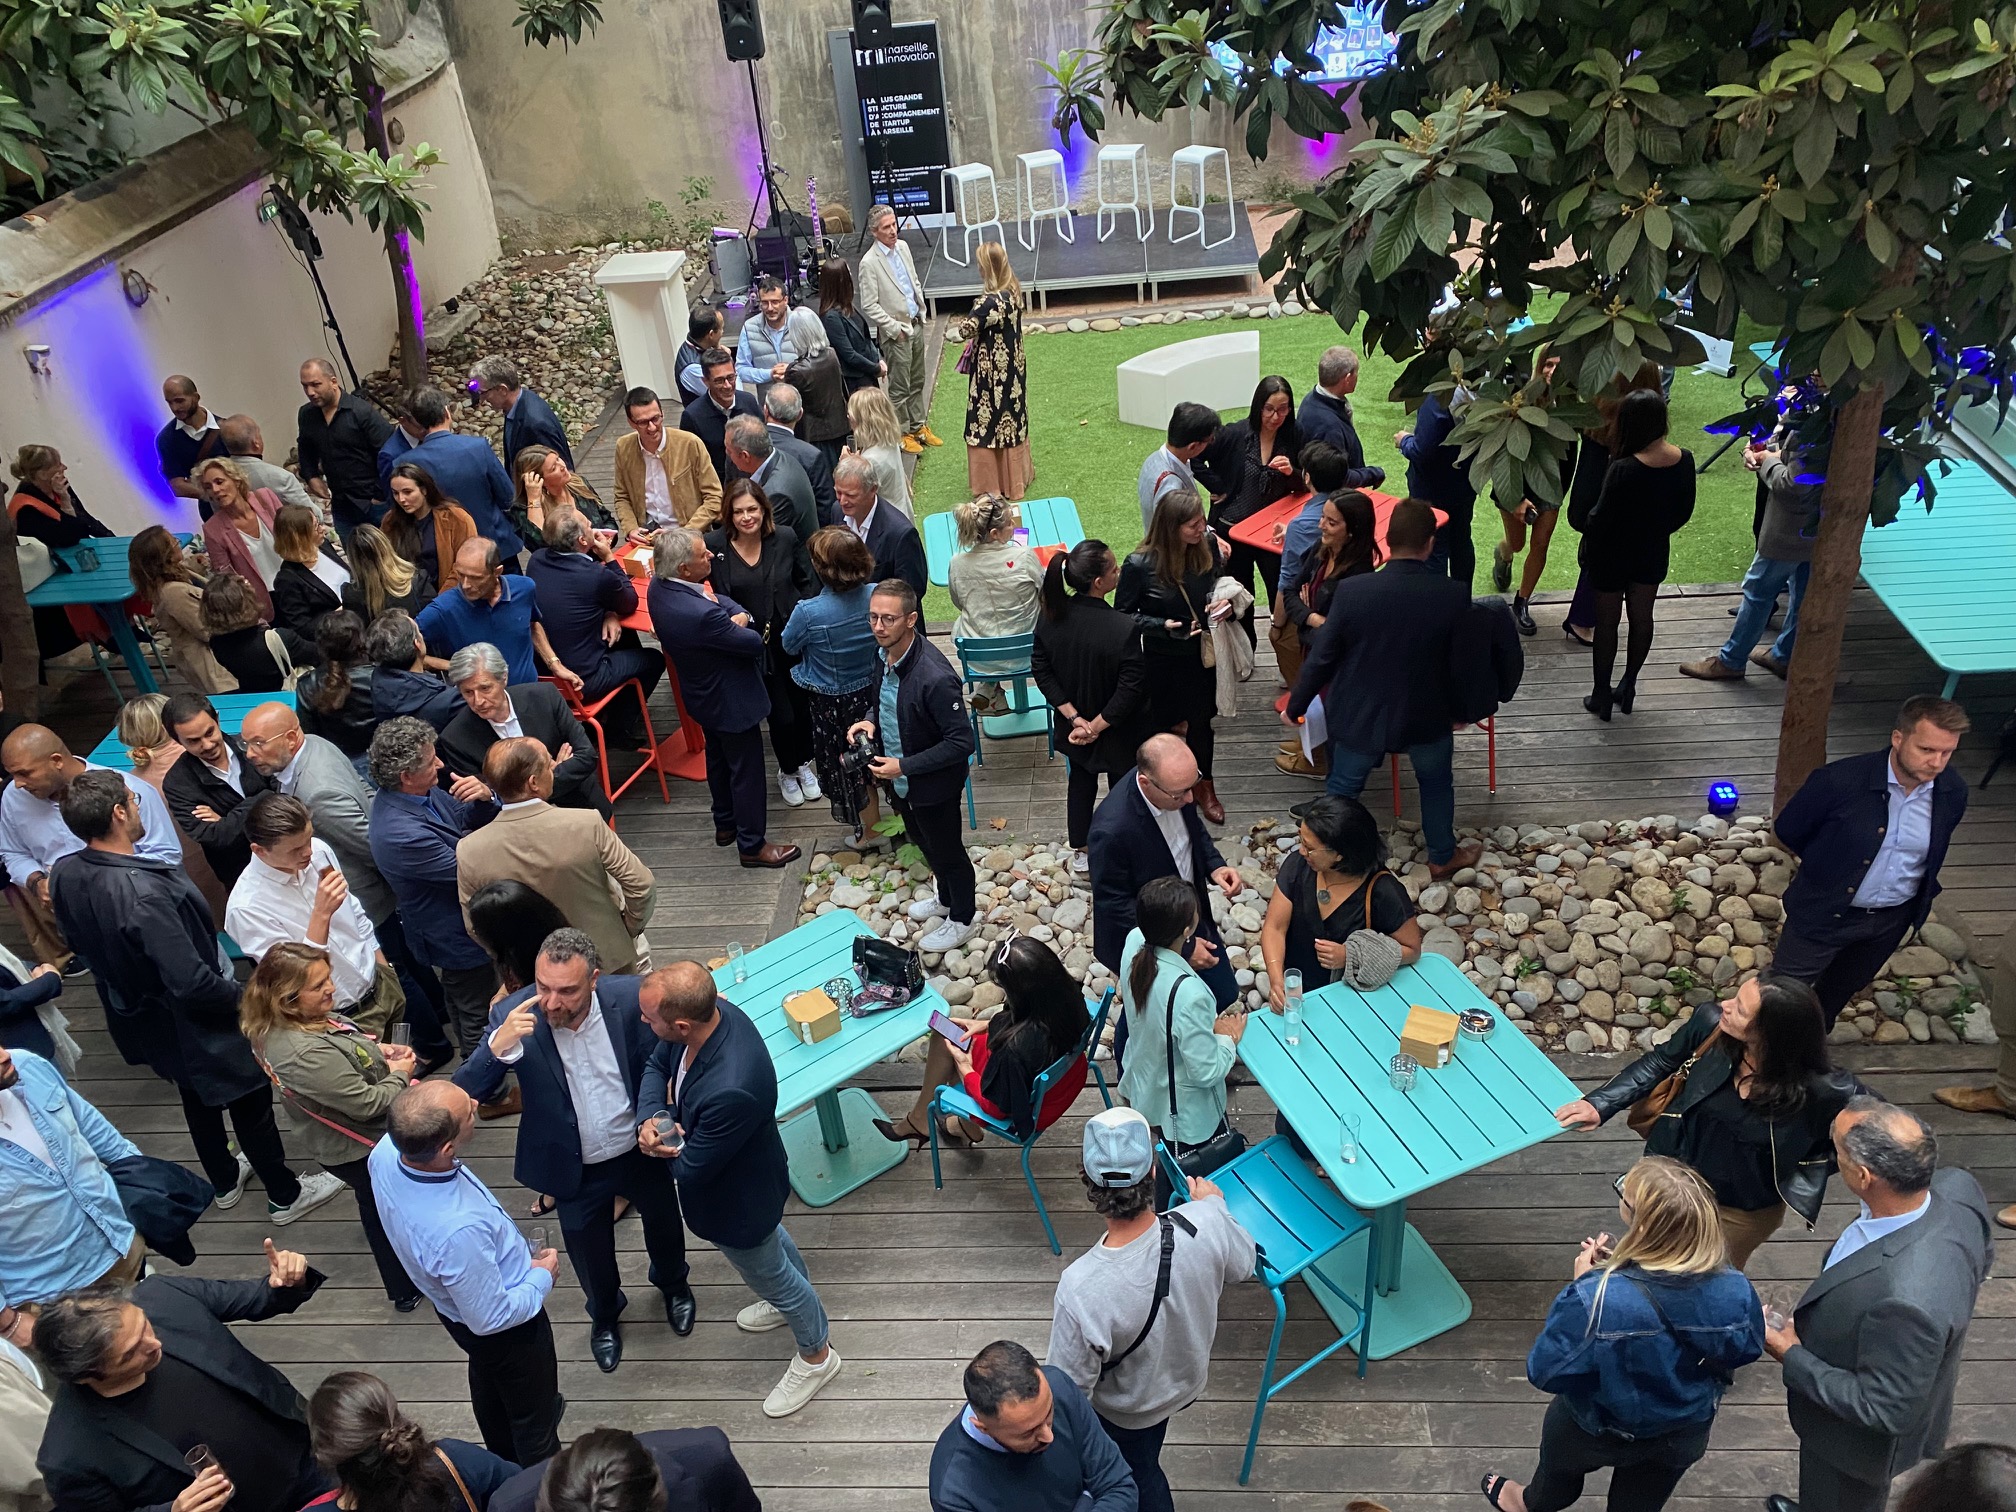 Marseille Innovation fête ses 25 ans au CIC Place de l'Innovation